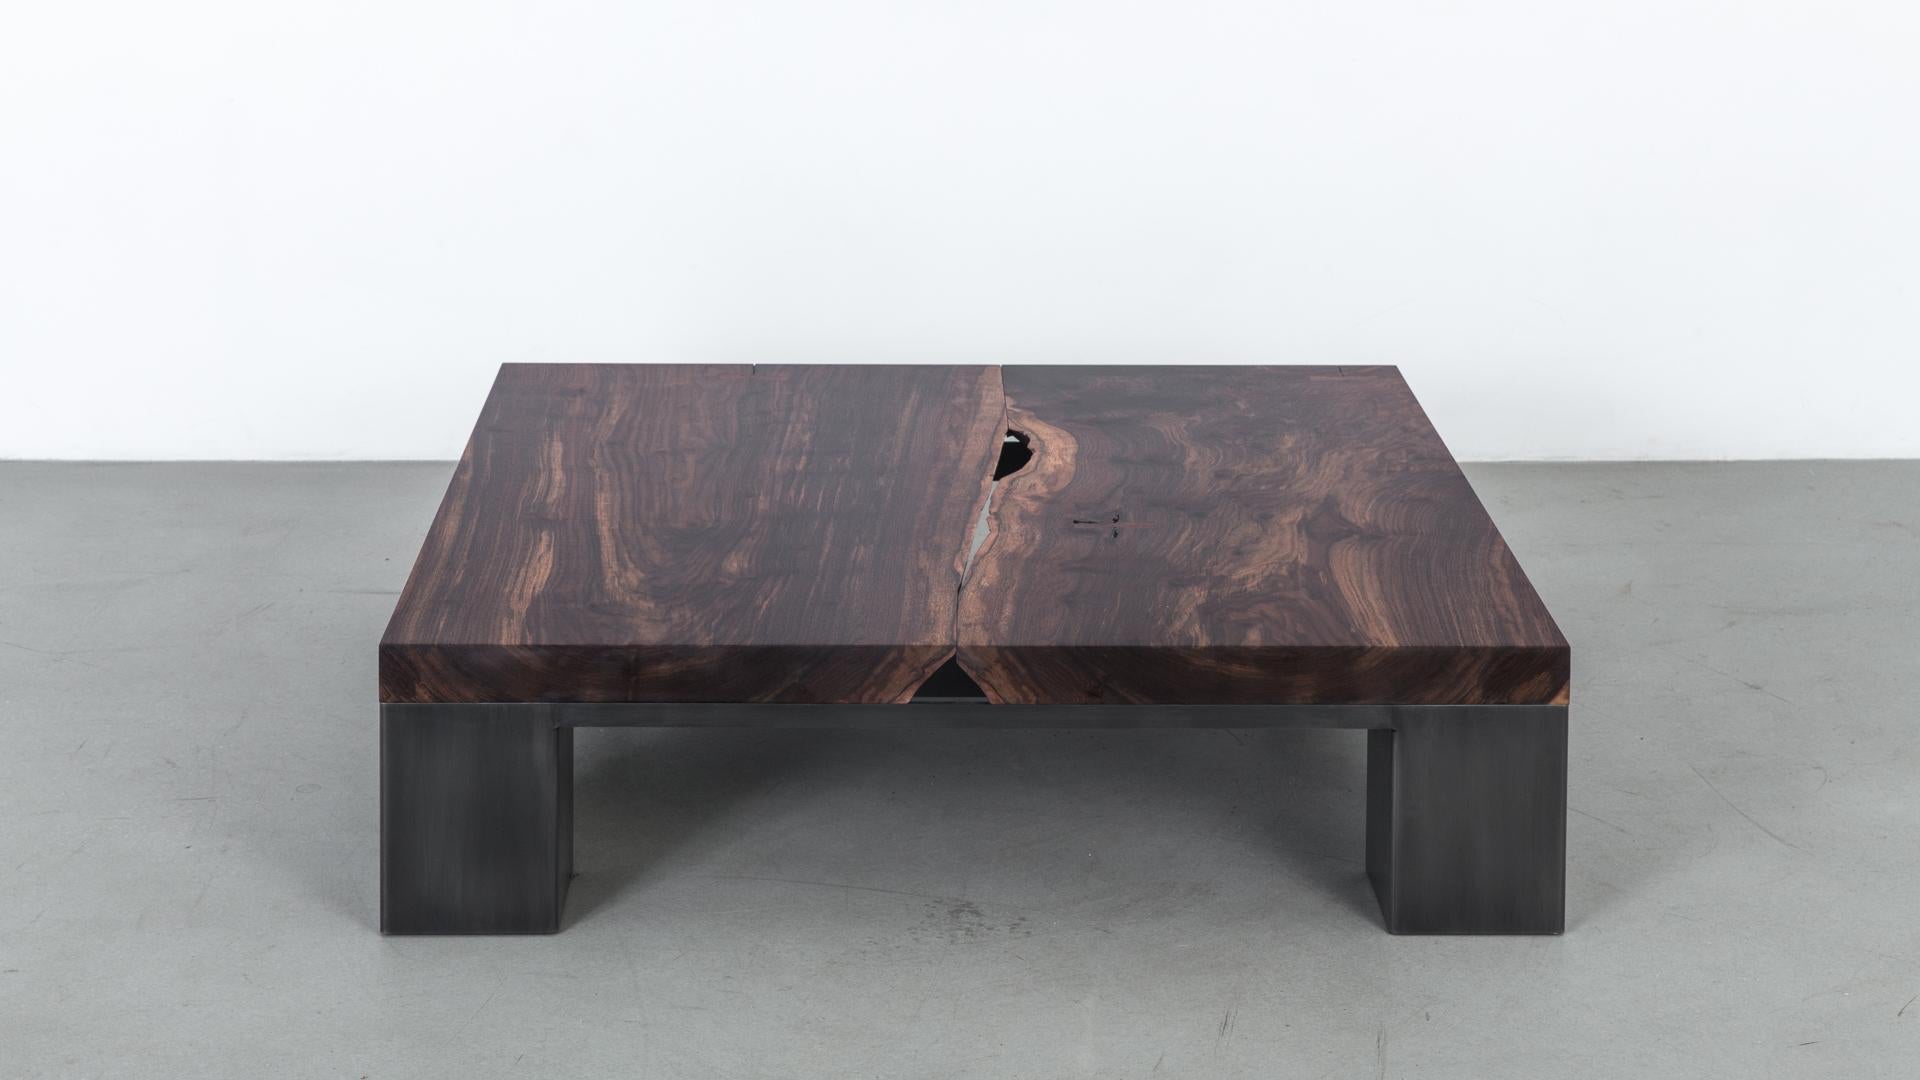 La table basse Kong est créée à partir d'un plateau en bois massif en finition noyer:: posé sur un cadre en acier. L'équilibre visuel de sa forme et de son poids crée un contraste dynamique avec le détail du bord organique vers le centre du plateau